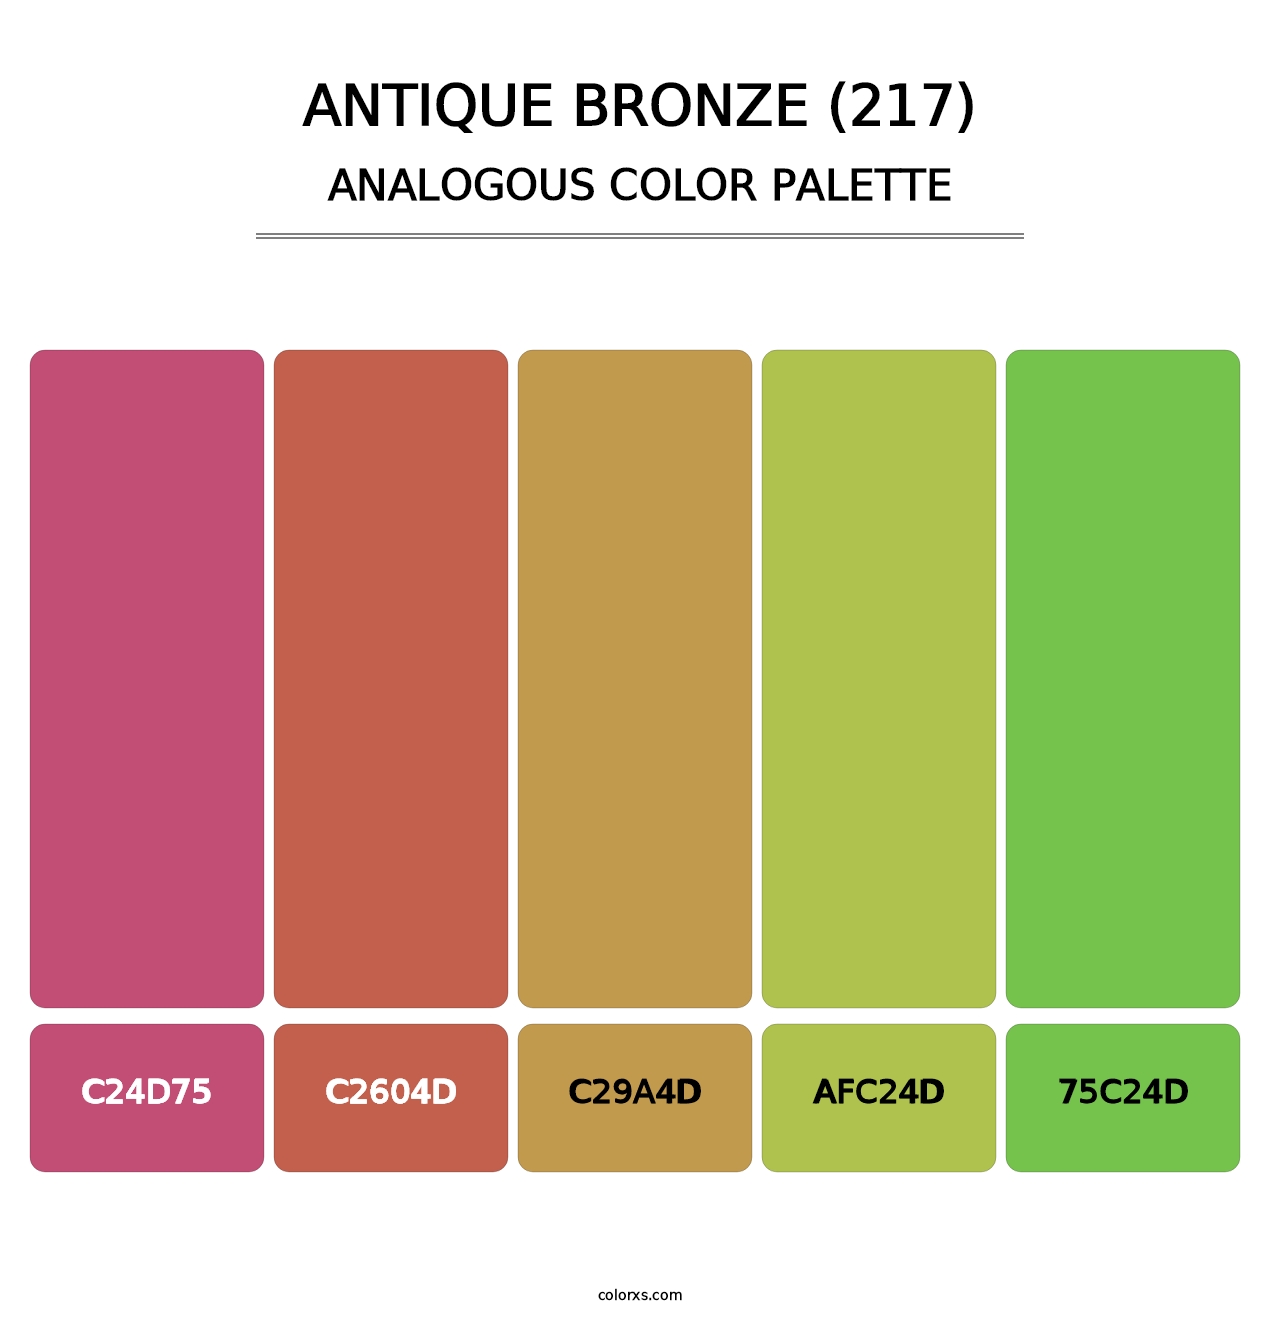 Antique Bronze (217) - Analogous Color Palette